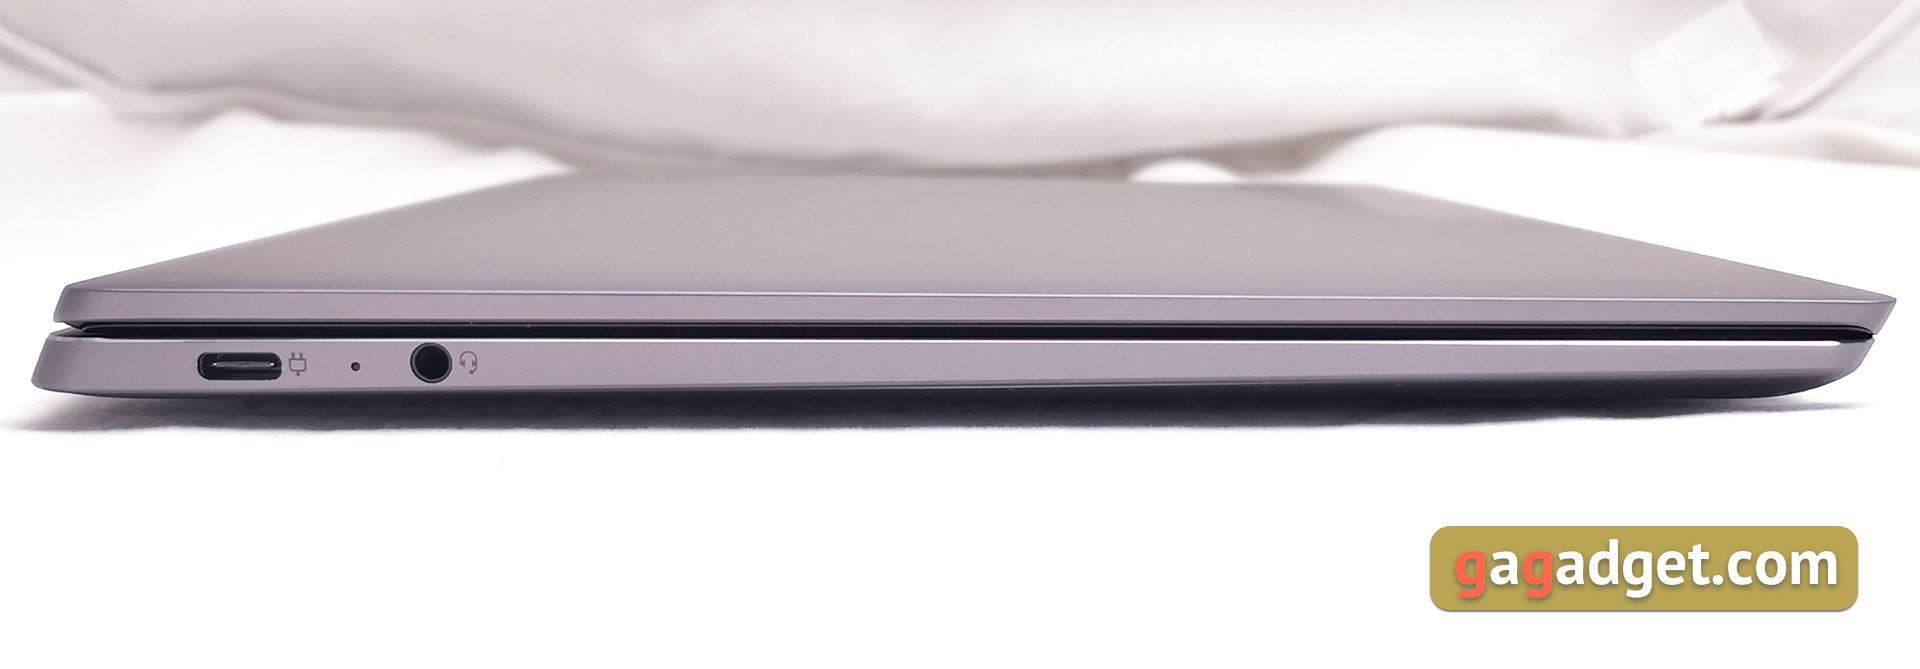 Recenzja Lenovo Yoga S940: teraz nie transformer, ale prestiżowy ultrabook -8